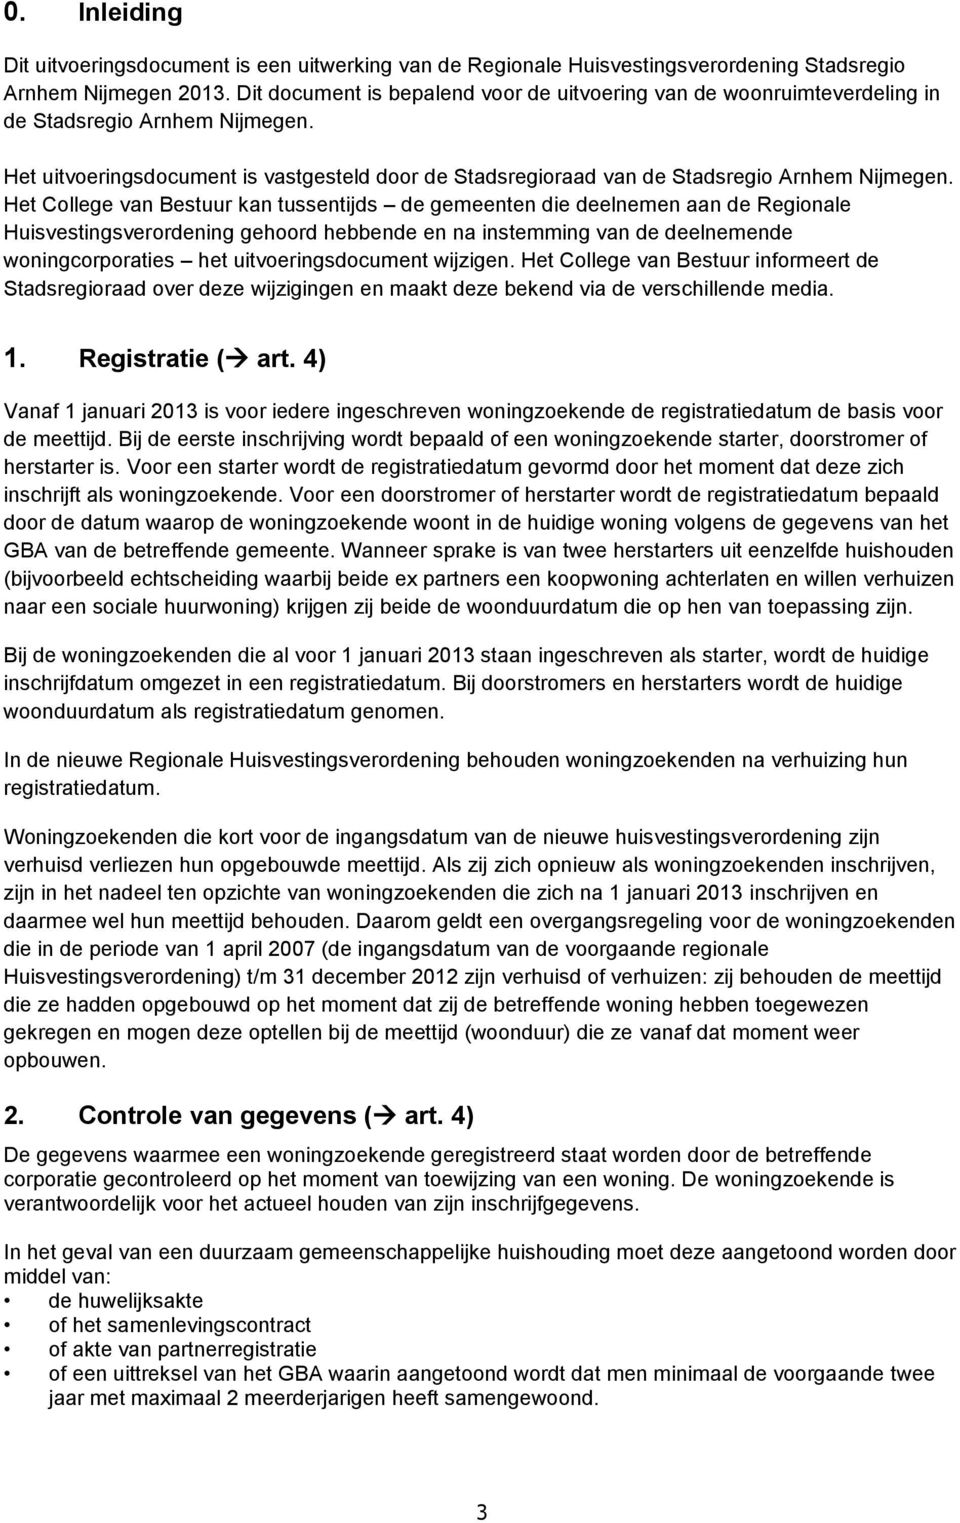 Het uitvoeringsdocument is vastgesteld door de Stadsregioraad van de Stadsregio Arnhem Nijmegen.